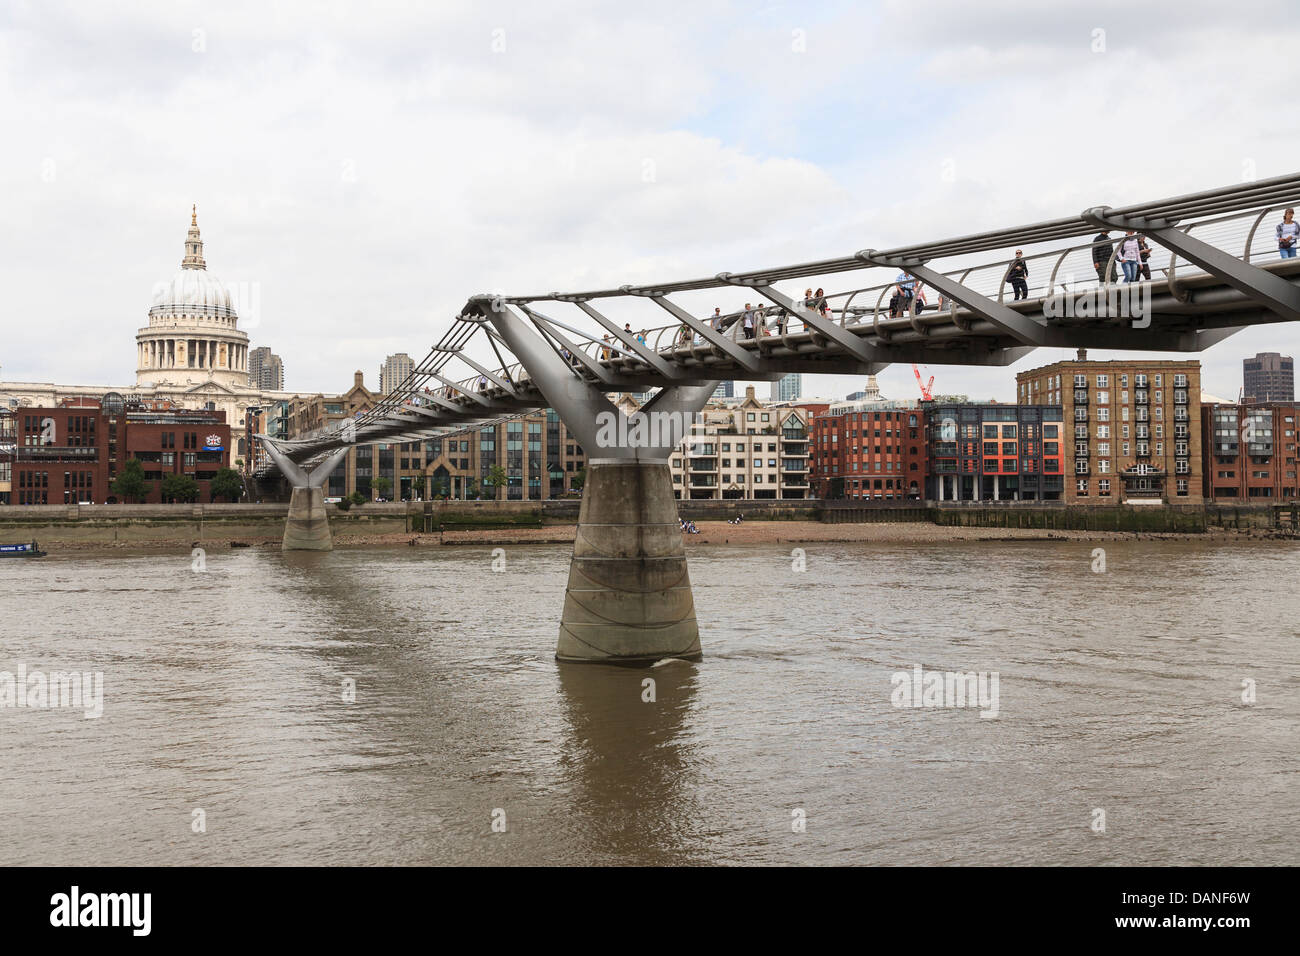 Le Millennium Bridge, officiellement connu sous le nom de passerelle du millénaire de Londres, la Cathédrale St Paul, London, UK Banque D'Images